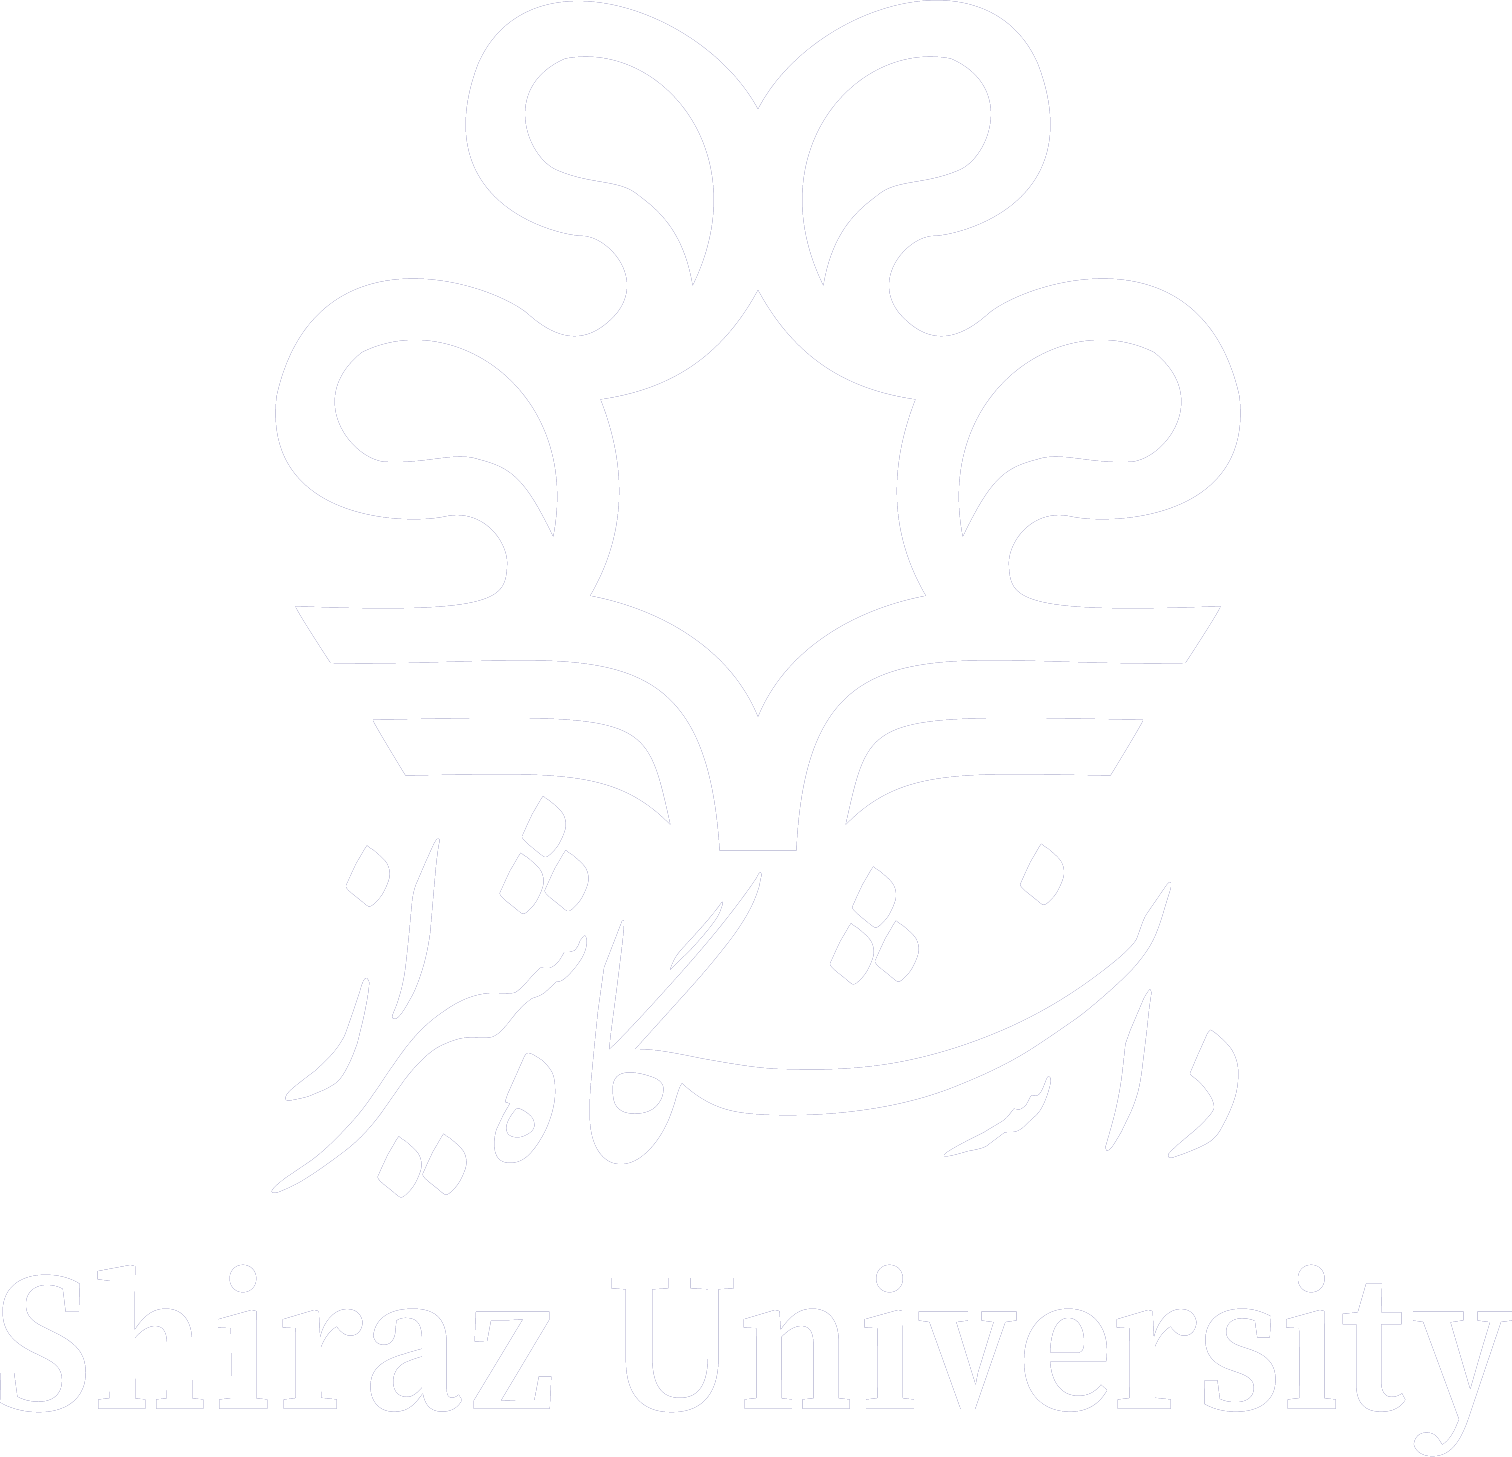 لوگو دانشگاه شیراز